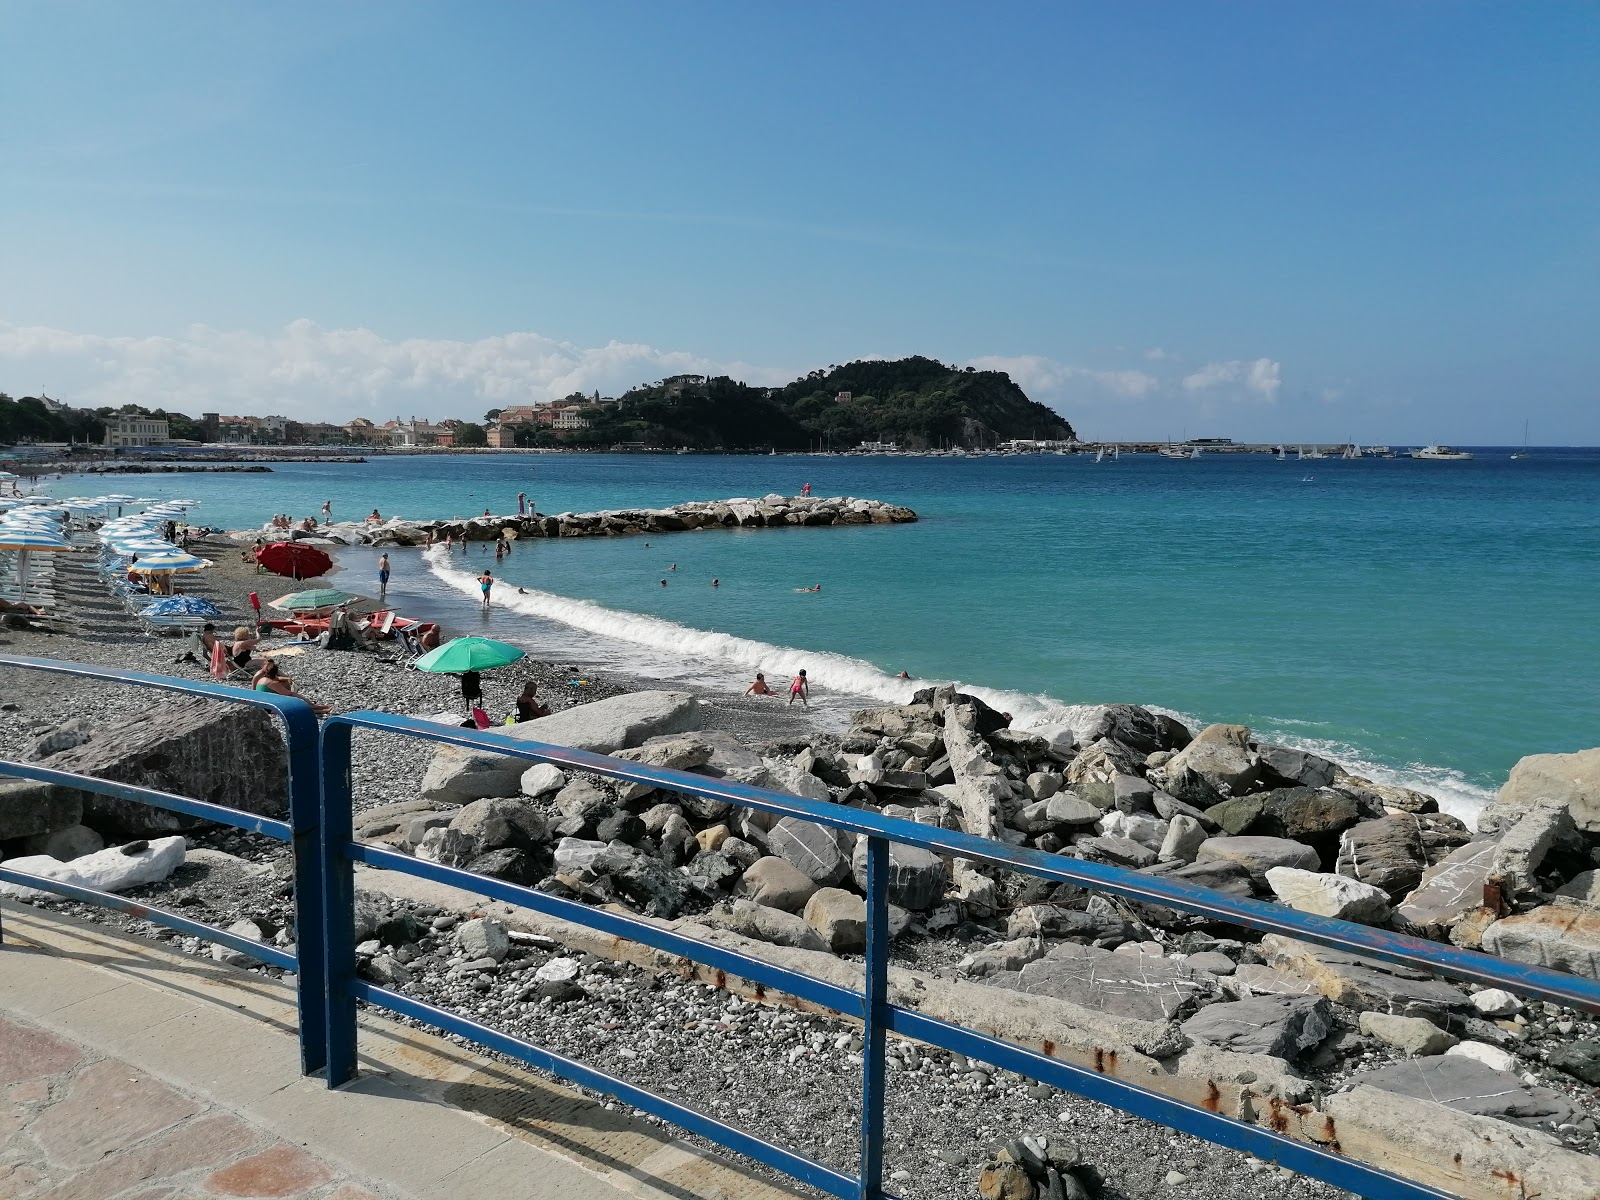 Spiaggia per cani'in fotoğrafı büyük koylar ile birlikte